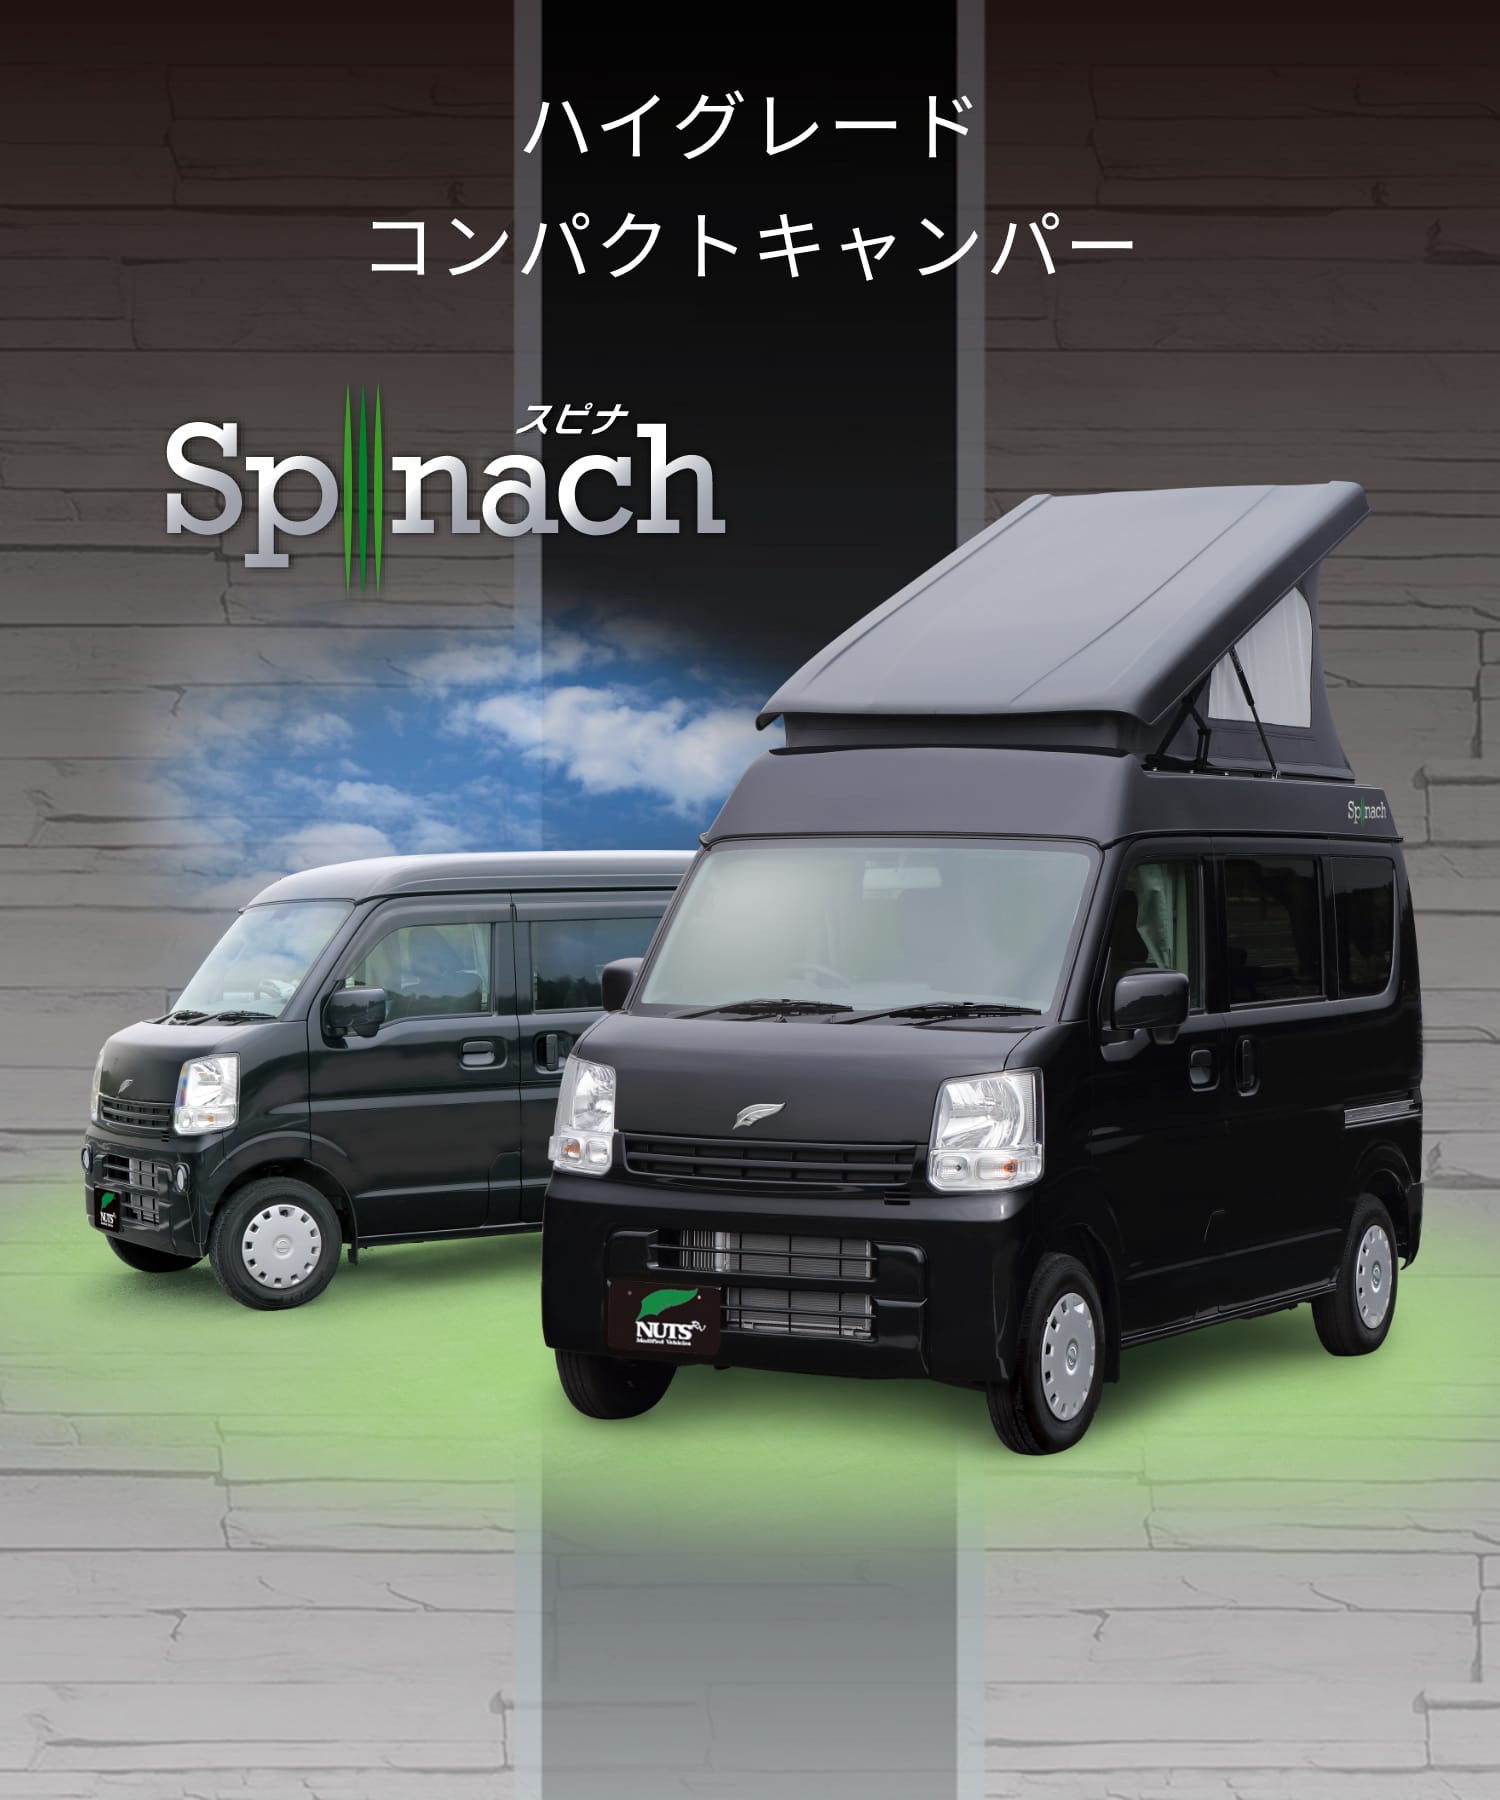 Spinach スピナ 日本最大級キャンピングカー製造メーカーナッツrv